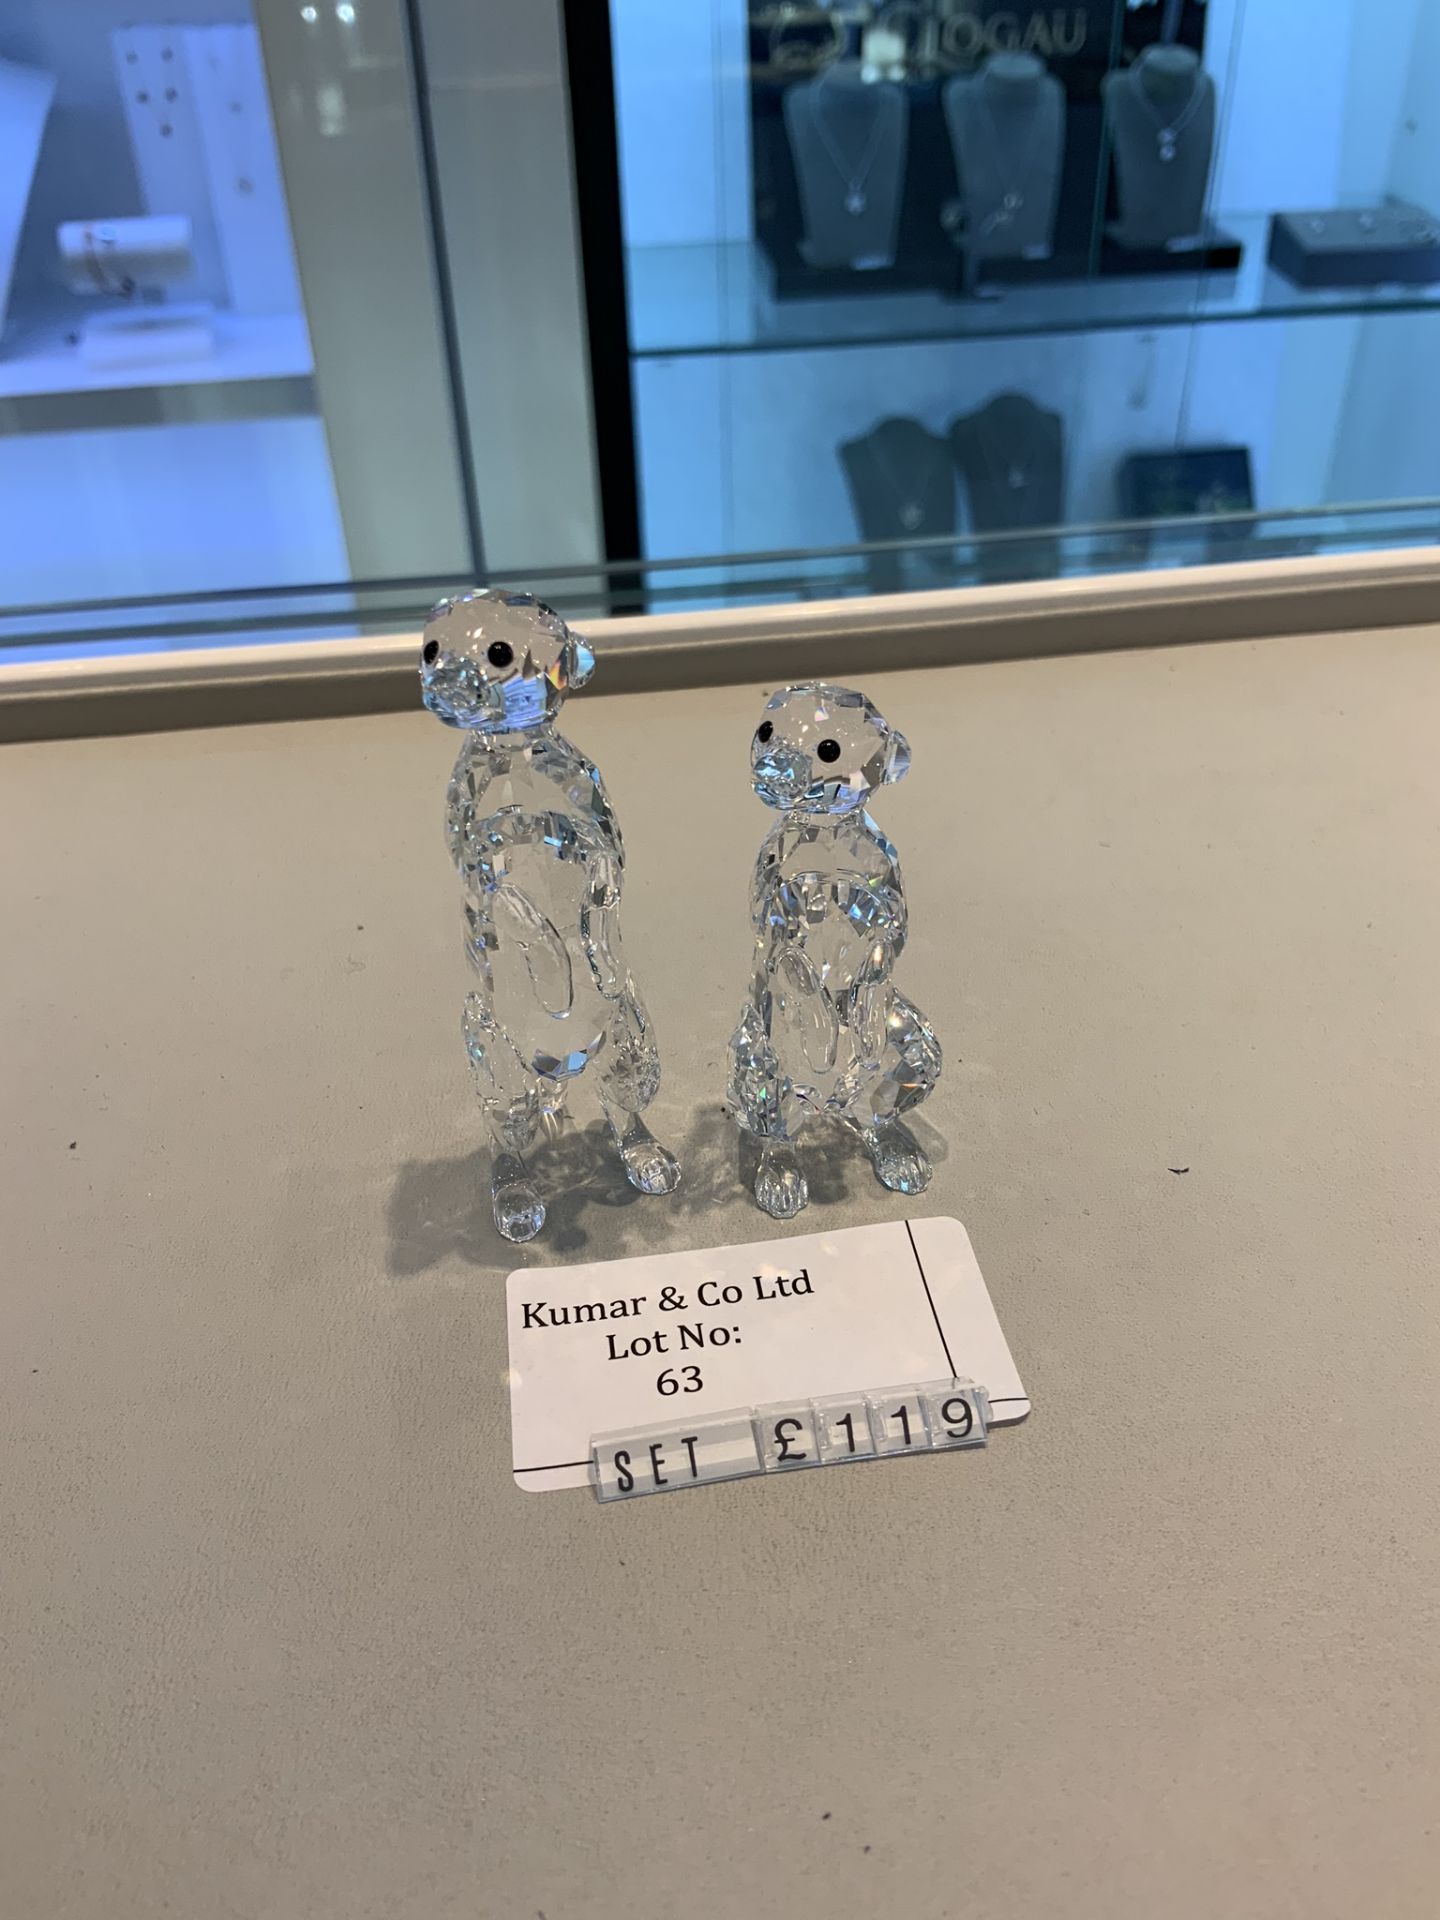 Swarovski Crystal Meerkats Figurine Set RRP £119 - Image 2 of 3